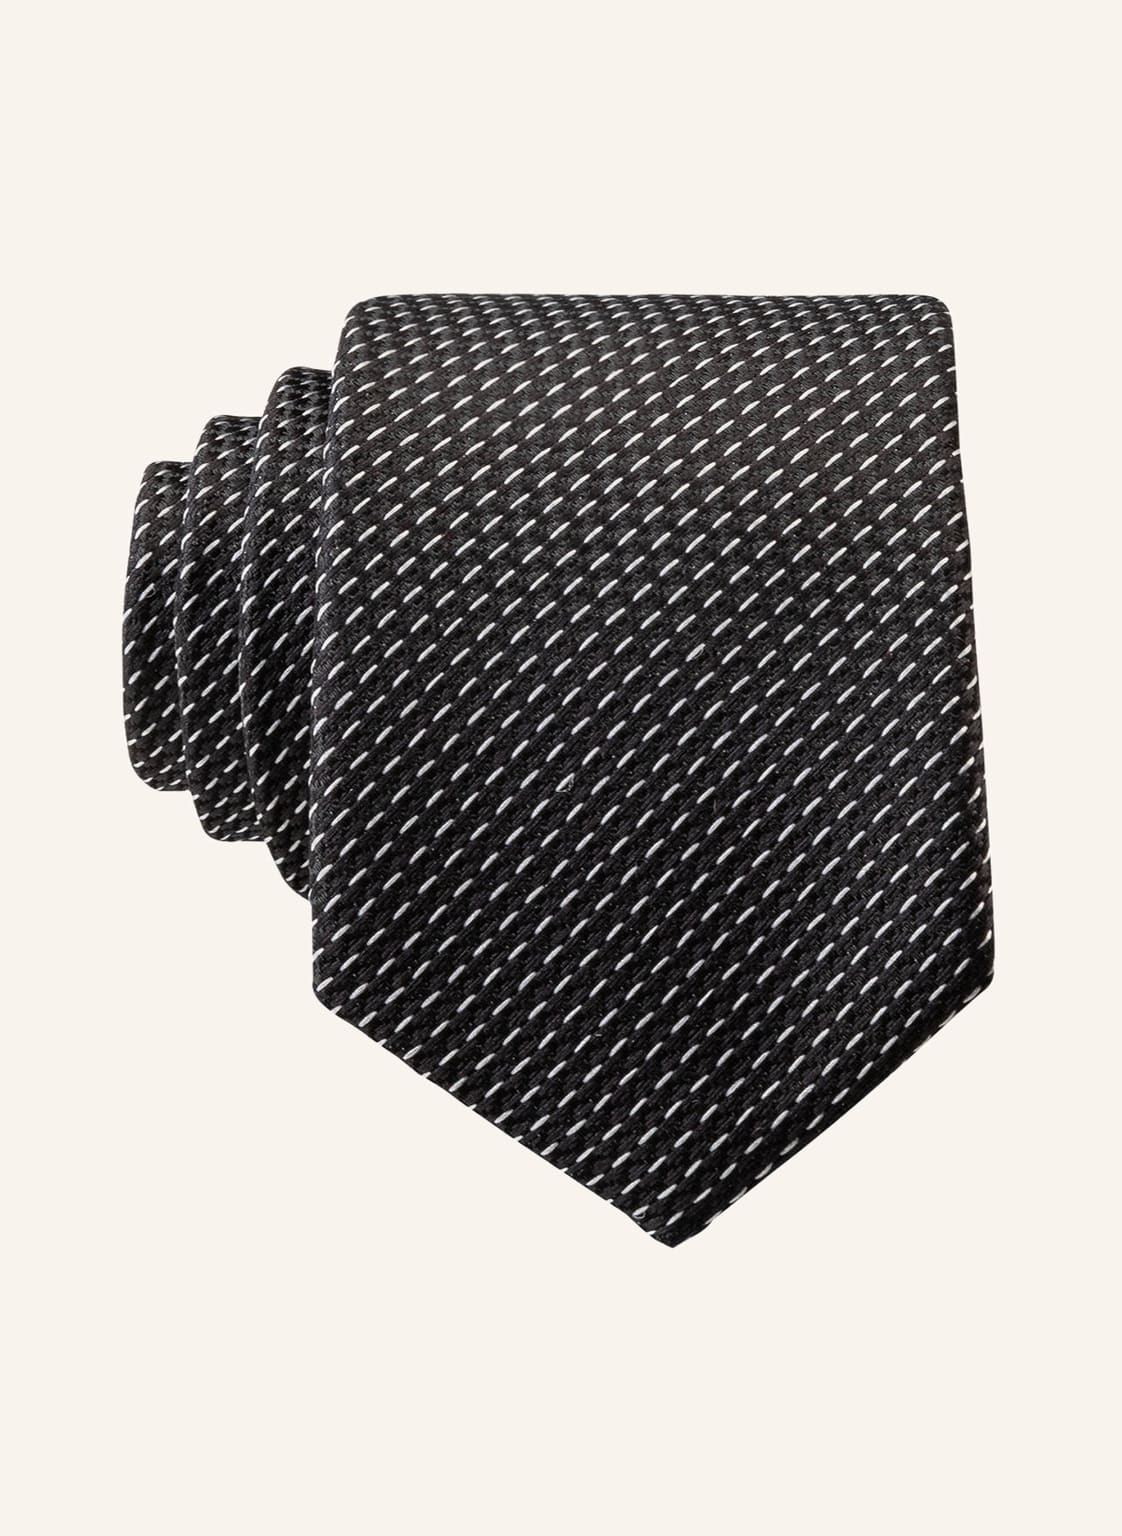 G.O.L. Finest Collection Krawatte schwarz von G.O.L. FINEST COLLECTION